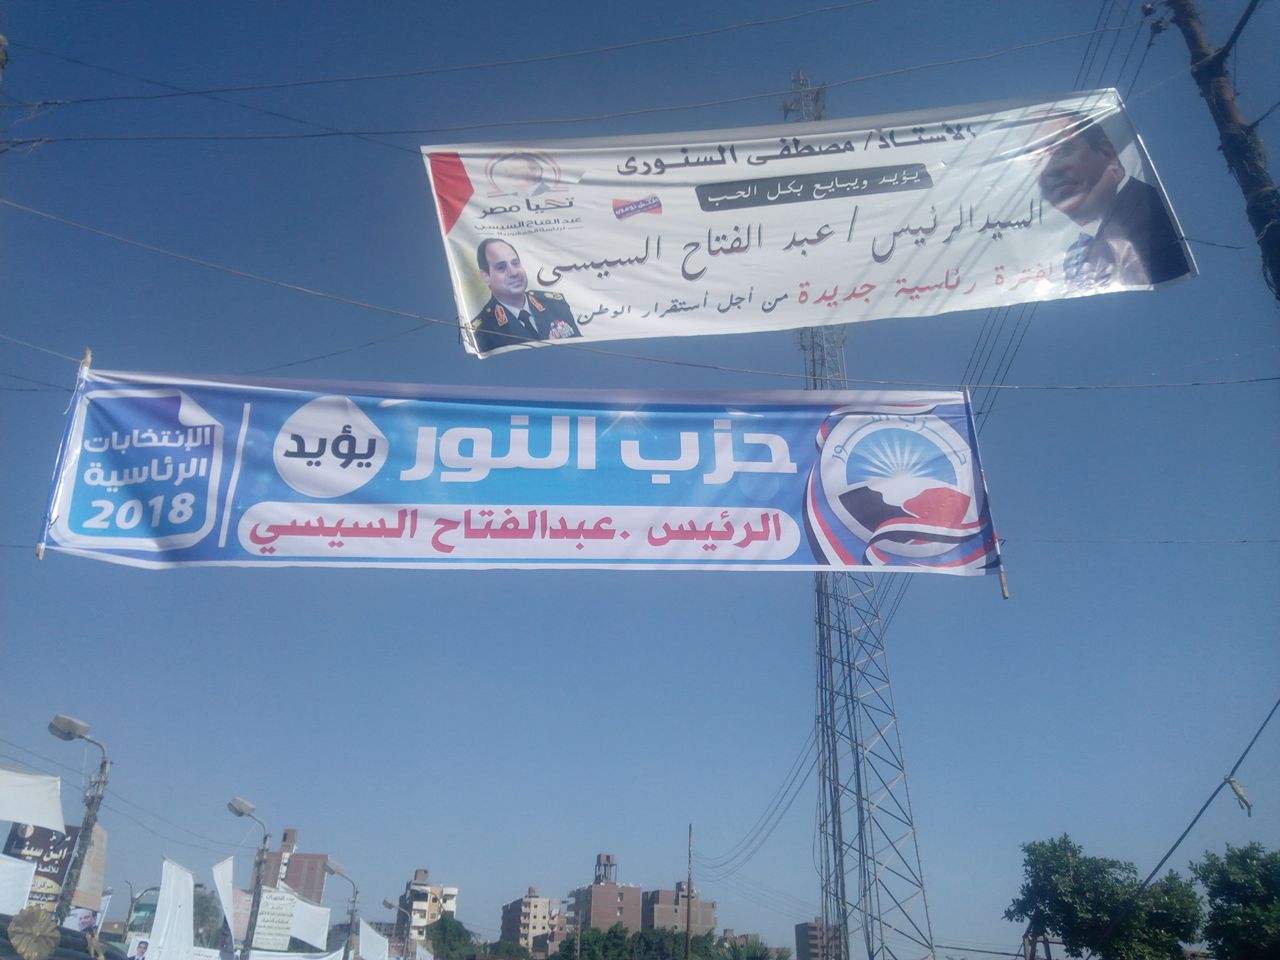   انتشار لافتات حزب النور السلفي لتأييد السيسي ببني سويف